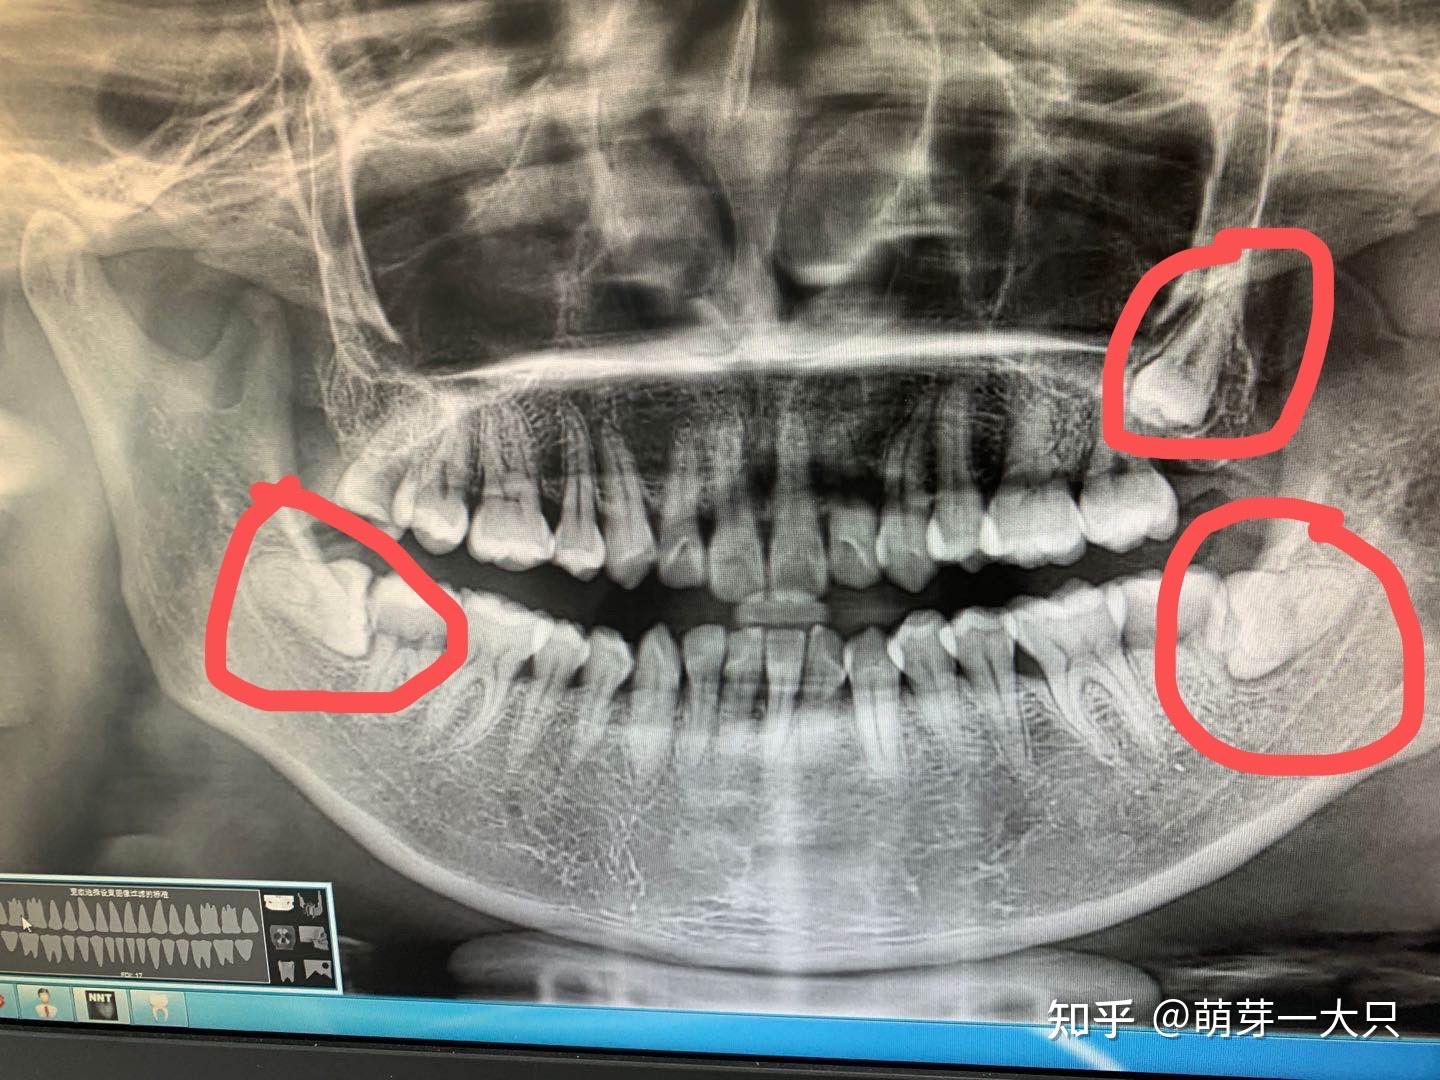 拔牙牙洞恢复过程图解分析（失去牙齿后，伤口要愈合多久？） | 说明书网